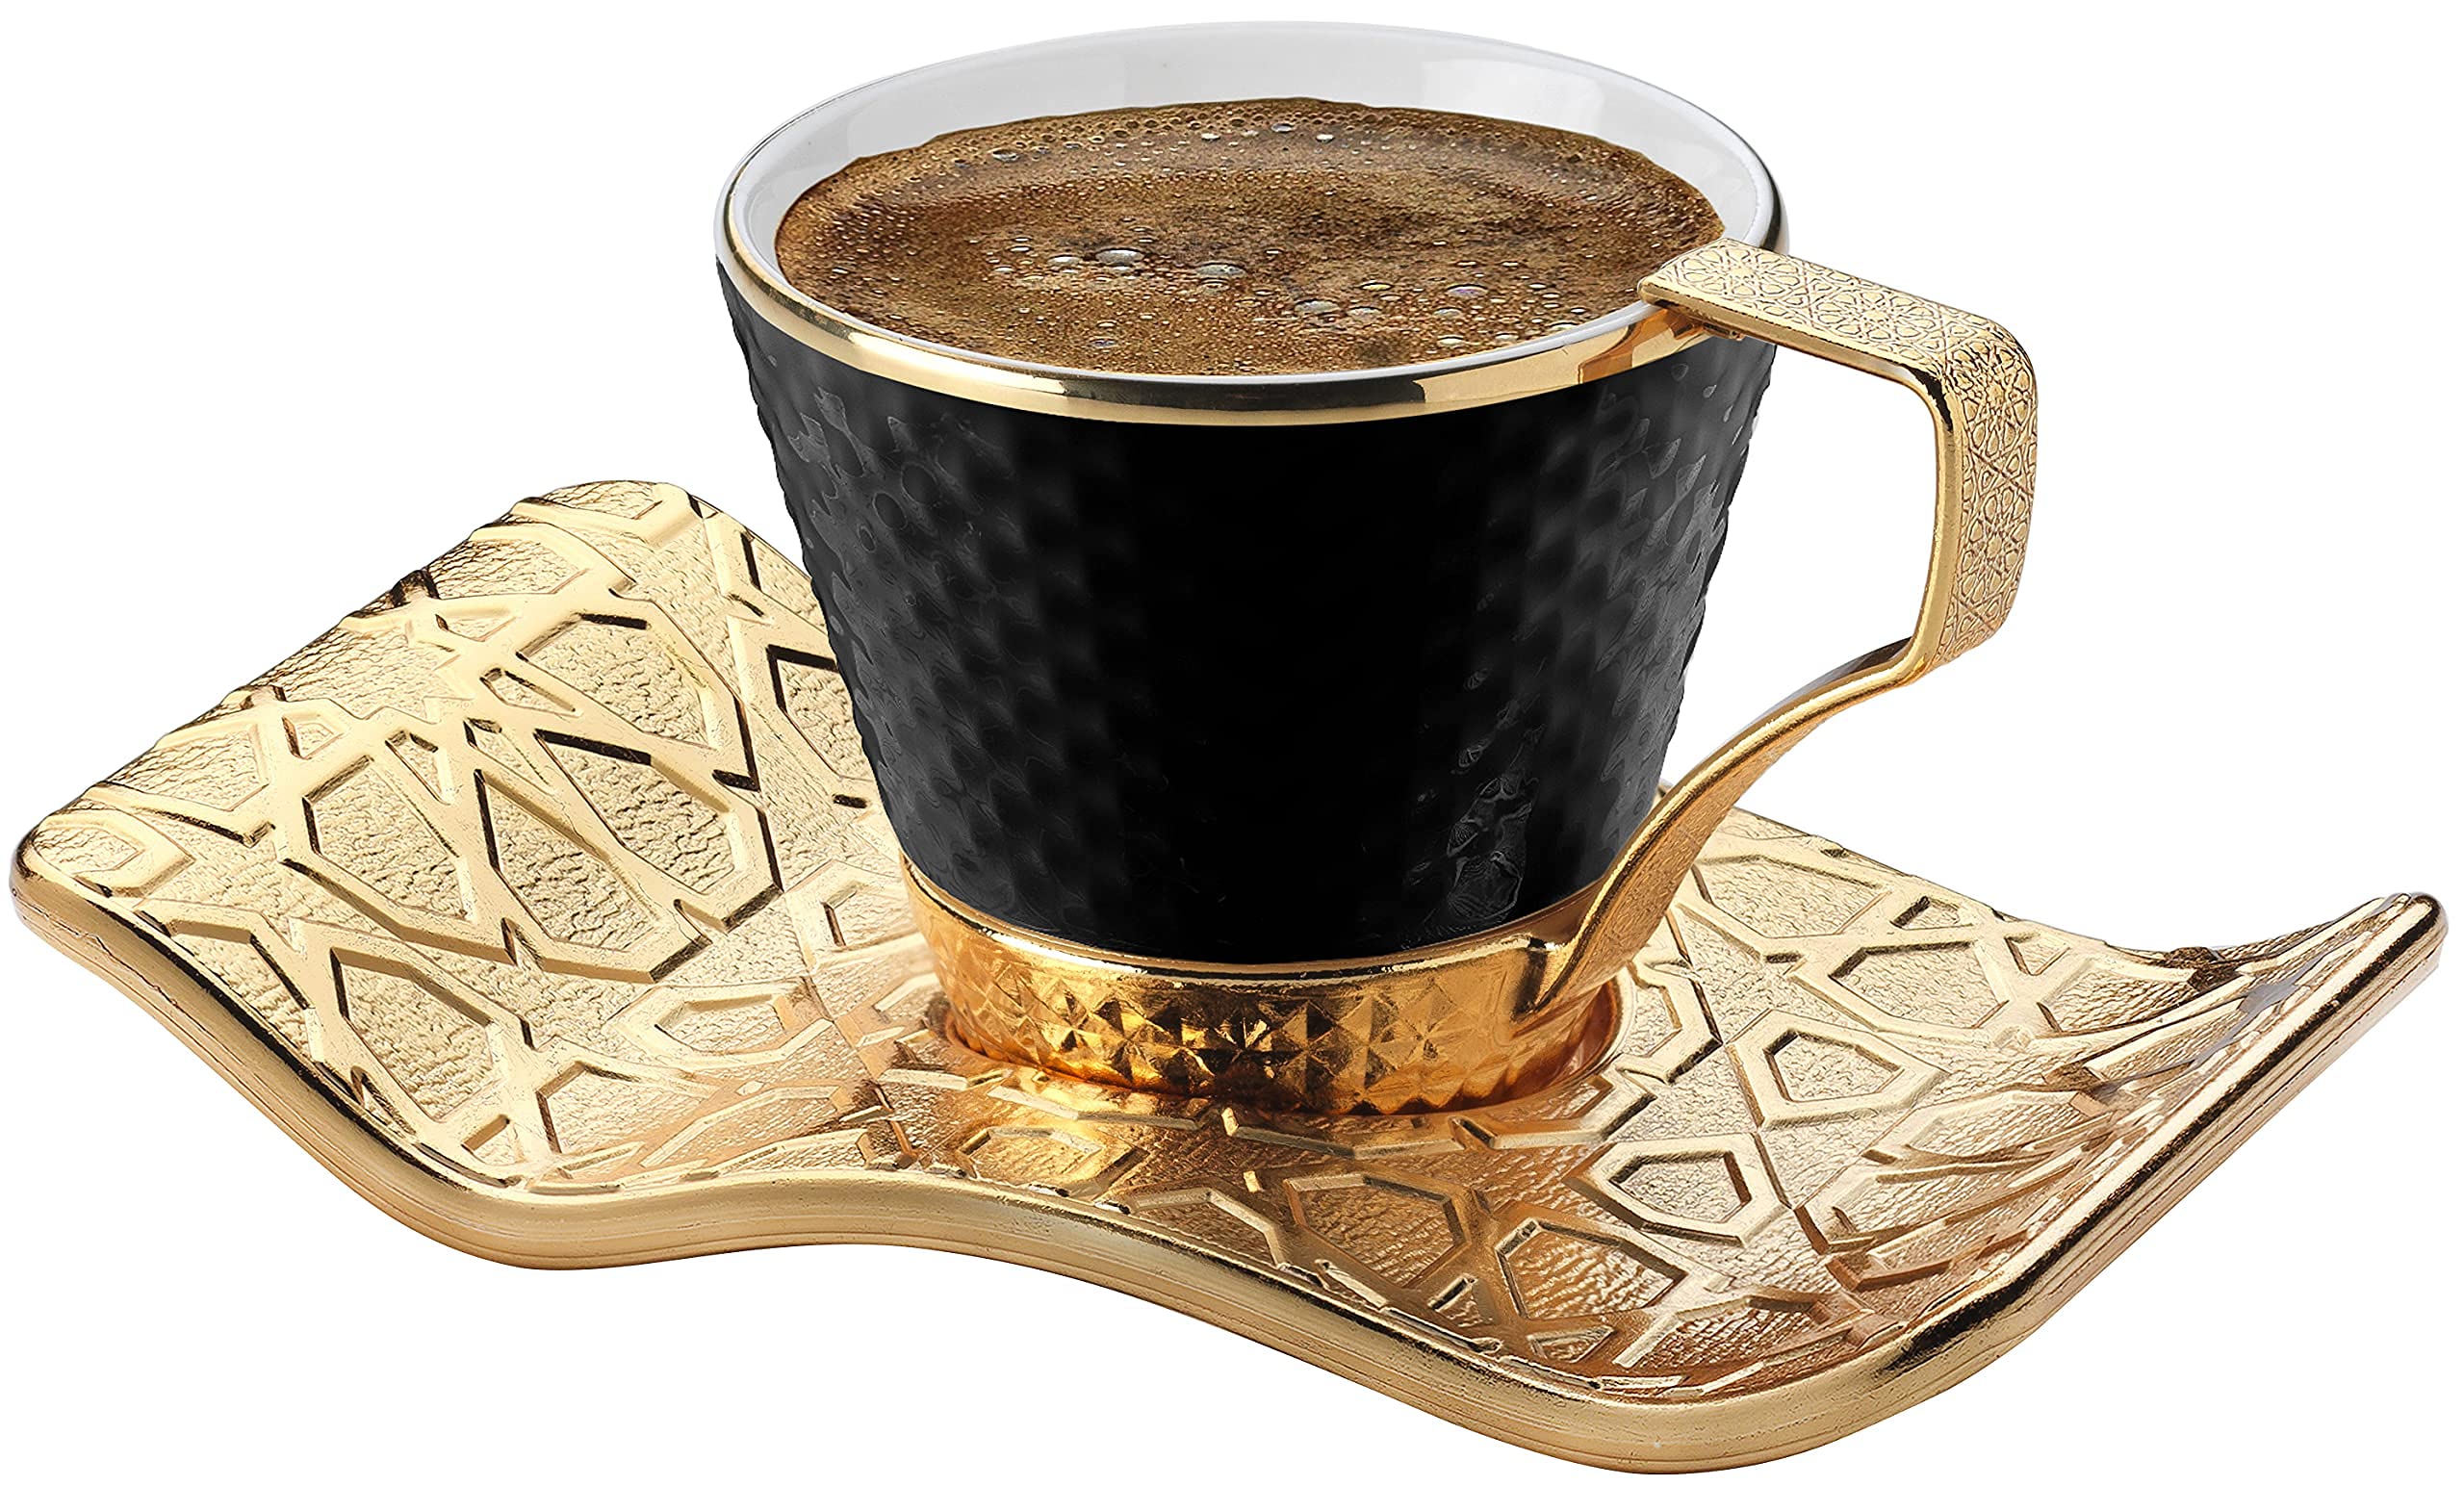 boutique en ligne DEMMEX Lot de 6 superbes tasses à café turc grec expresso avec porte-gobelets et soucoupes, 18 pièces – Tasses en porcelaine, soucoupes et porte-gobelets décorés en métal doré, 73,7 g – 80 ml spTjeJXrR stylé 